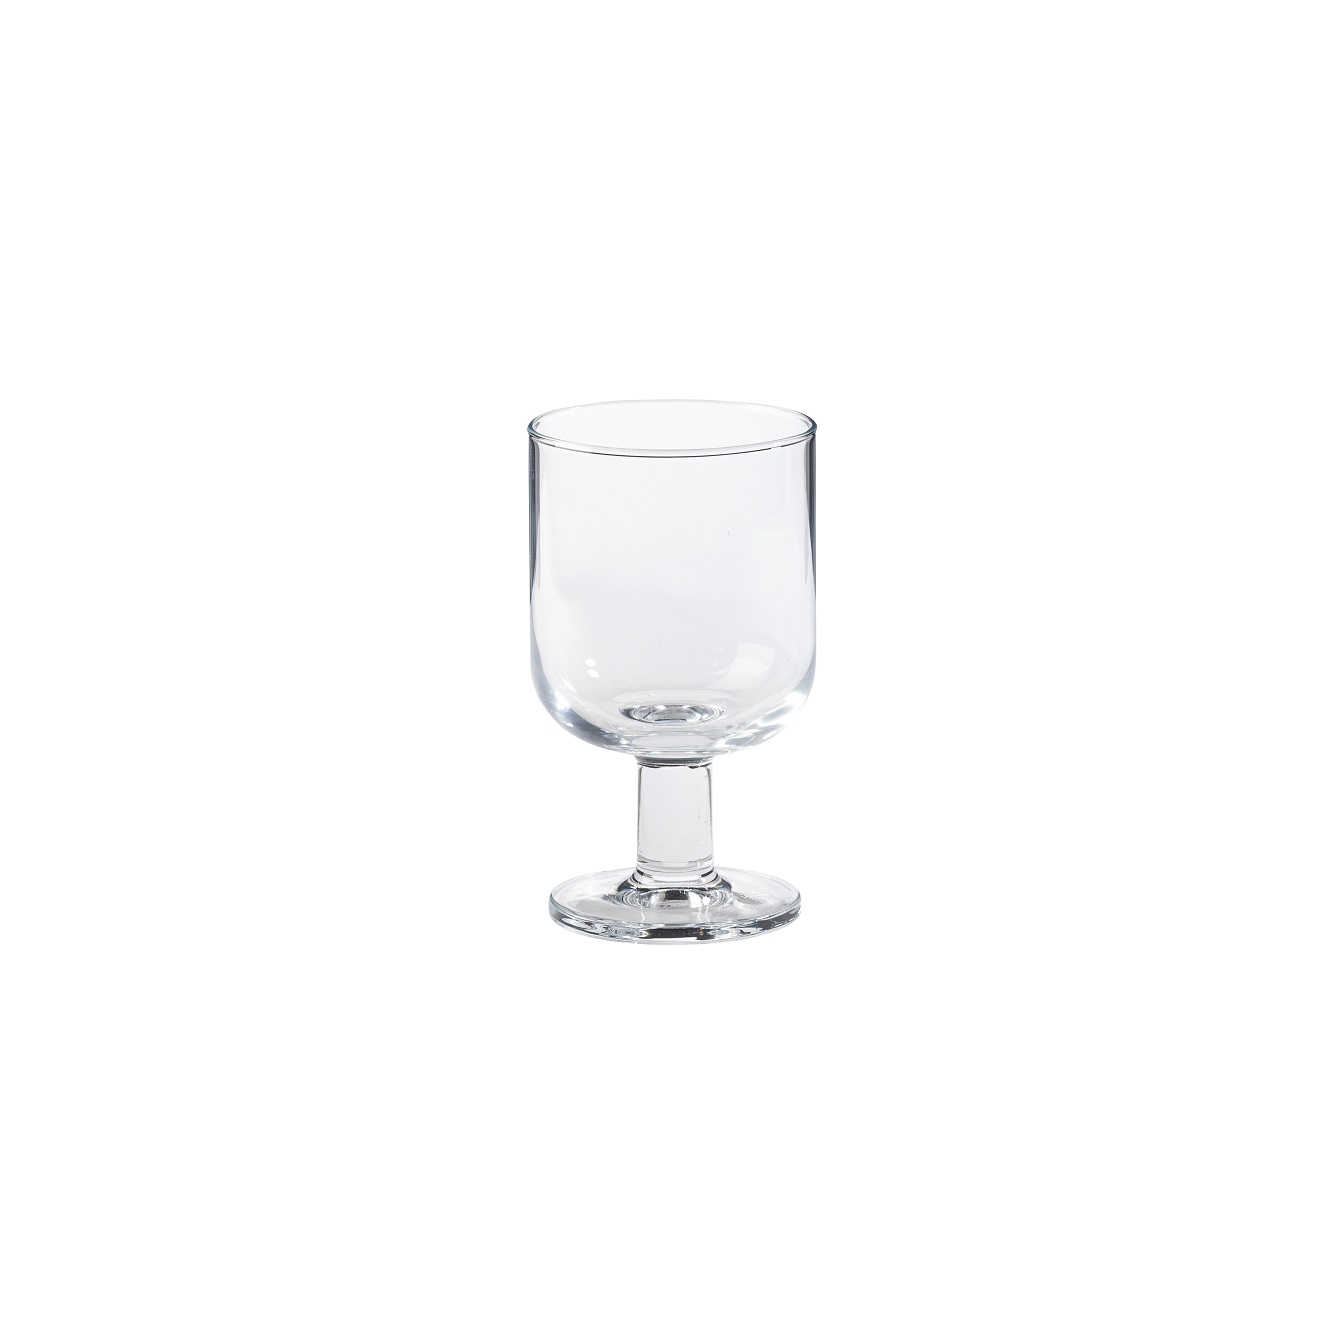 Safra Wine Glass 280ml Gift